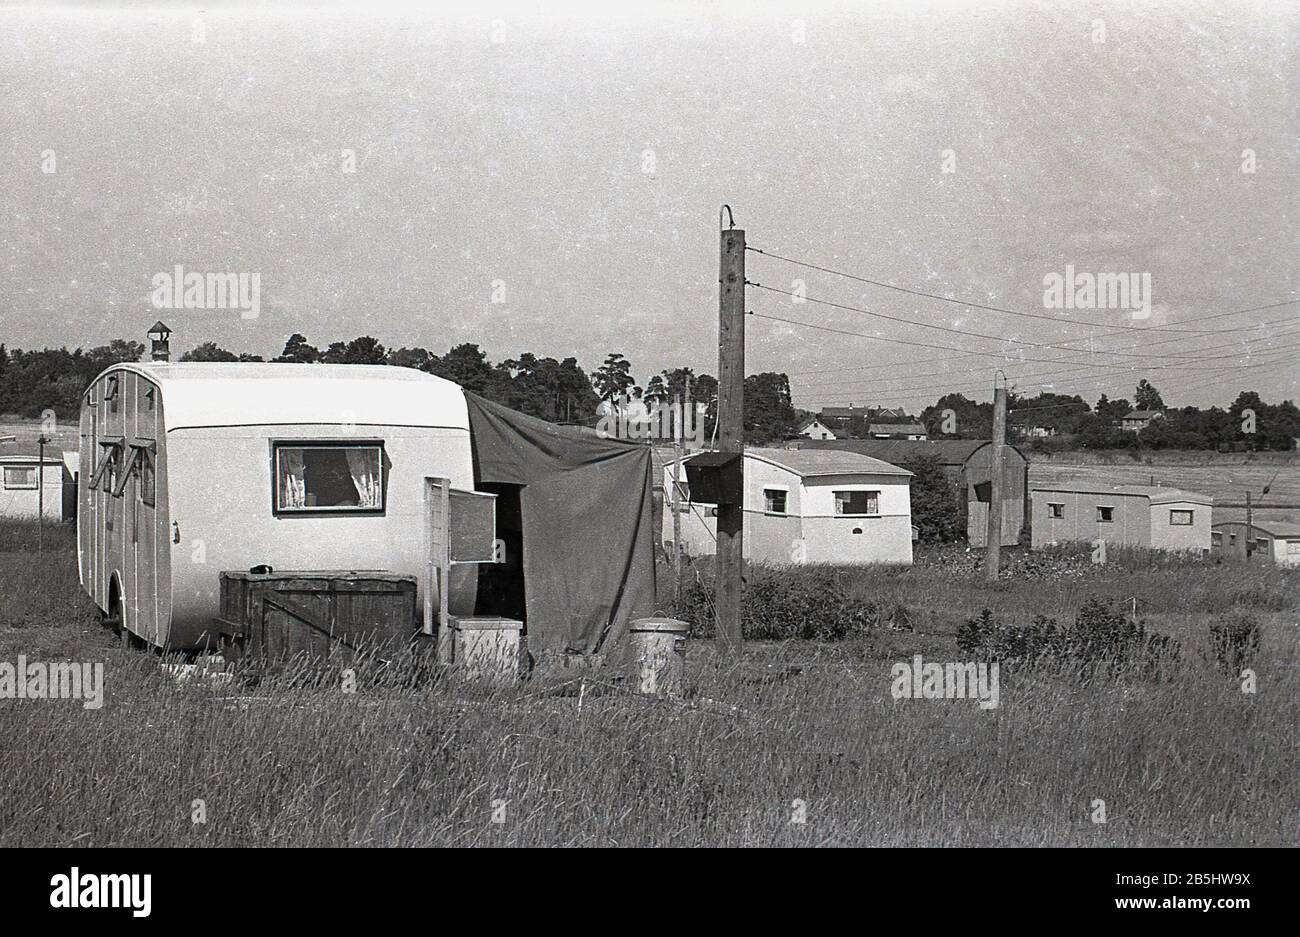 Anni '1950, storici, carovane dell'epoca, possibilmente usate come case mobili permanenti, sedevano in un campo erboso aperto, Inghilterra, Regno Unito, il vicino con una tenda da da sole laterale in tela. Foto Stock